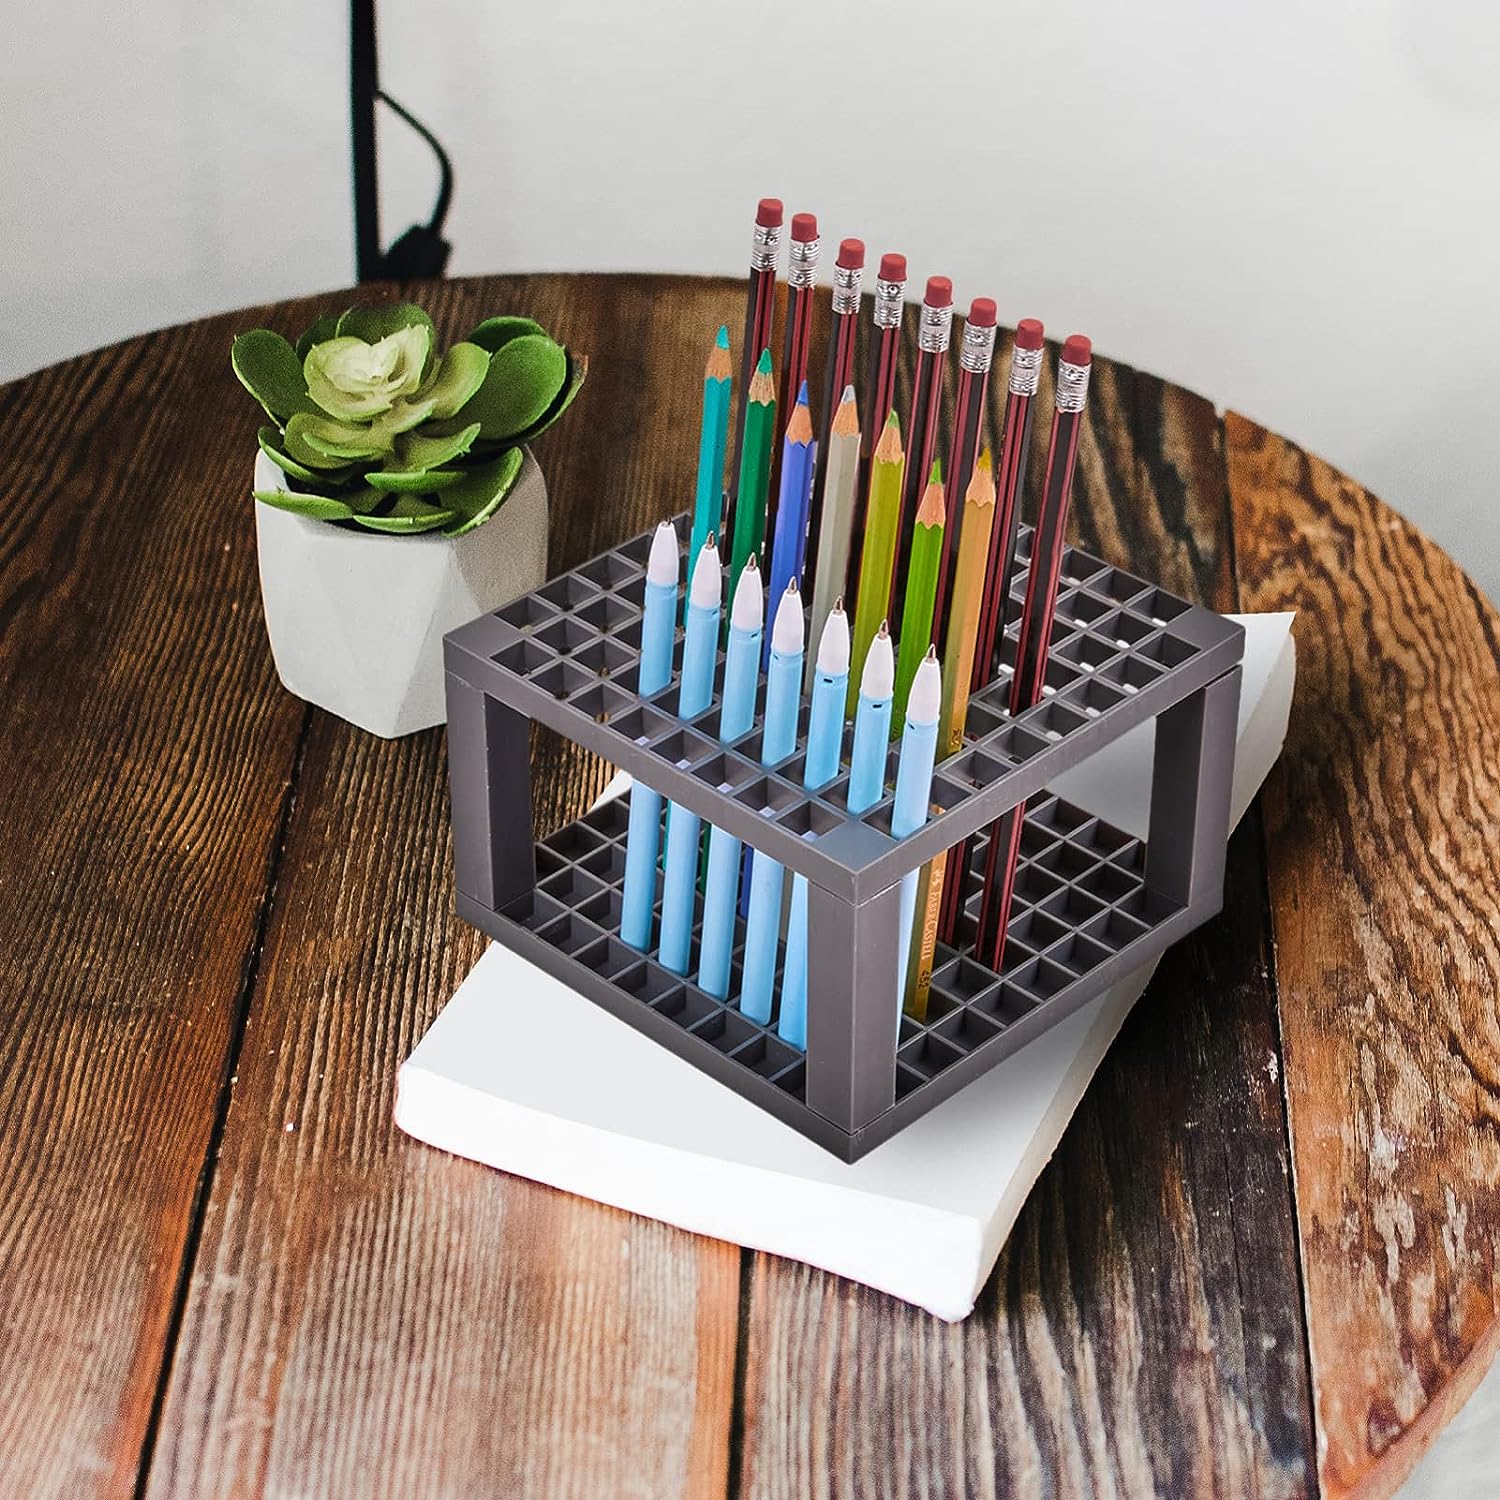 https://inkarto.com/cdn/shop/files/jai-ambe-novelties-brush-holder-96-holes-pencil-brush-holder-tabletop-plastic-study-desk-organizer-stand-for-pens-paint-brushes-modeling-tools-office-art-supplies-mesh-pen-holder-stat_8814018f-3253-4898-8643-d02b22a0649c.jpg?v=1697293709&width=1946